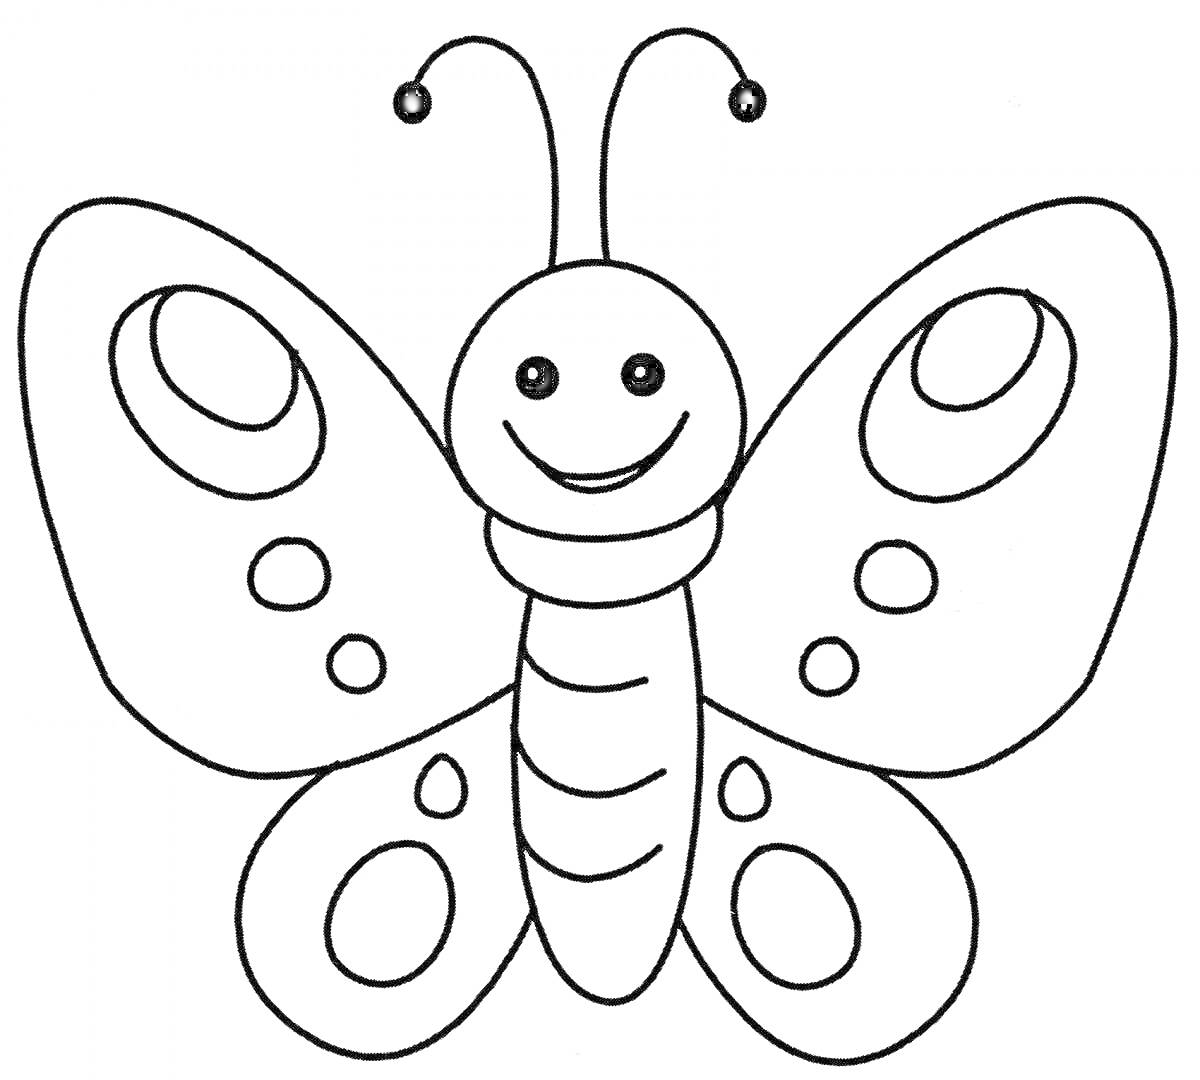 Раскраска Раскраска бабочка с узорами, антеннами и улыбающейся мордочкой